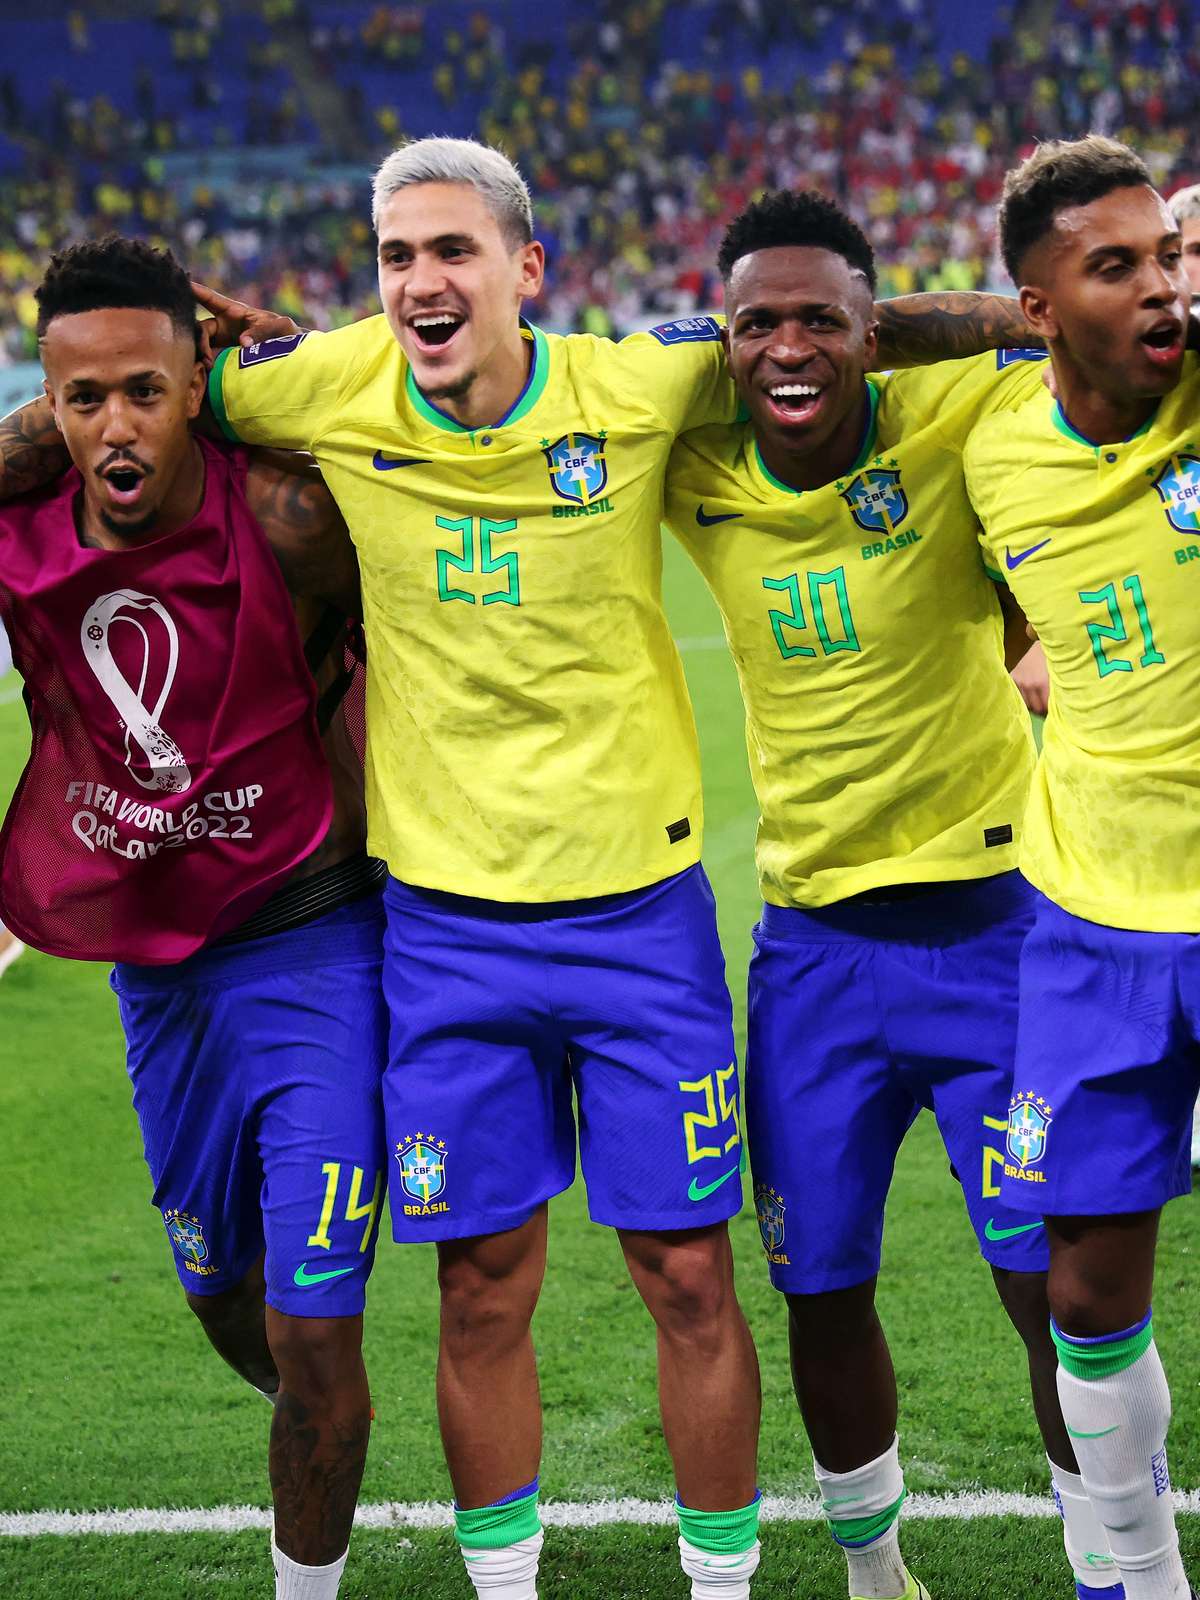 Brasil quer repetir jogo de excelência contra a Croácia e derrubar tabu  na Copa